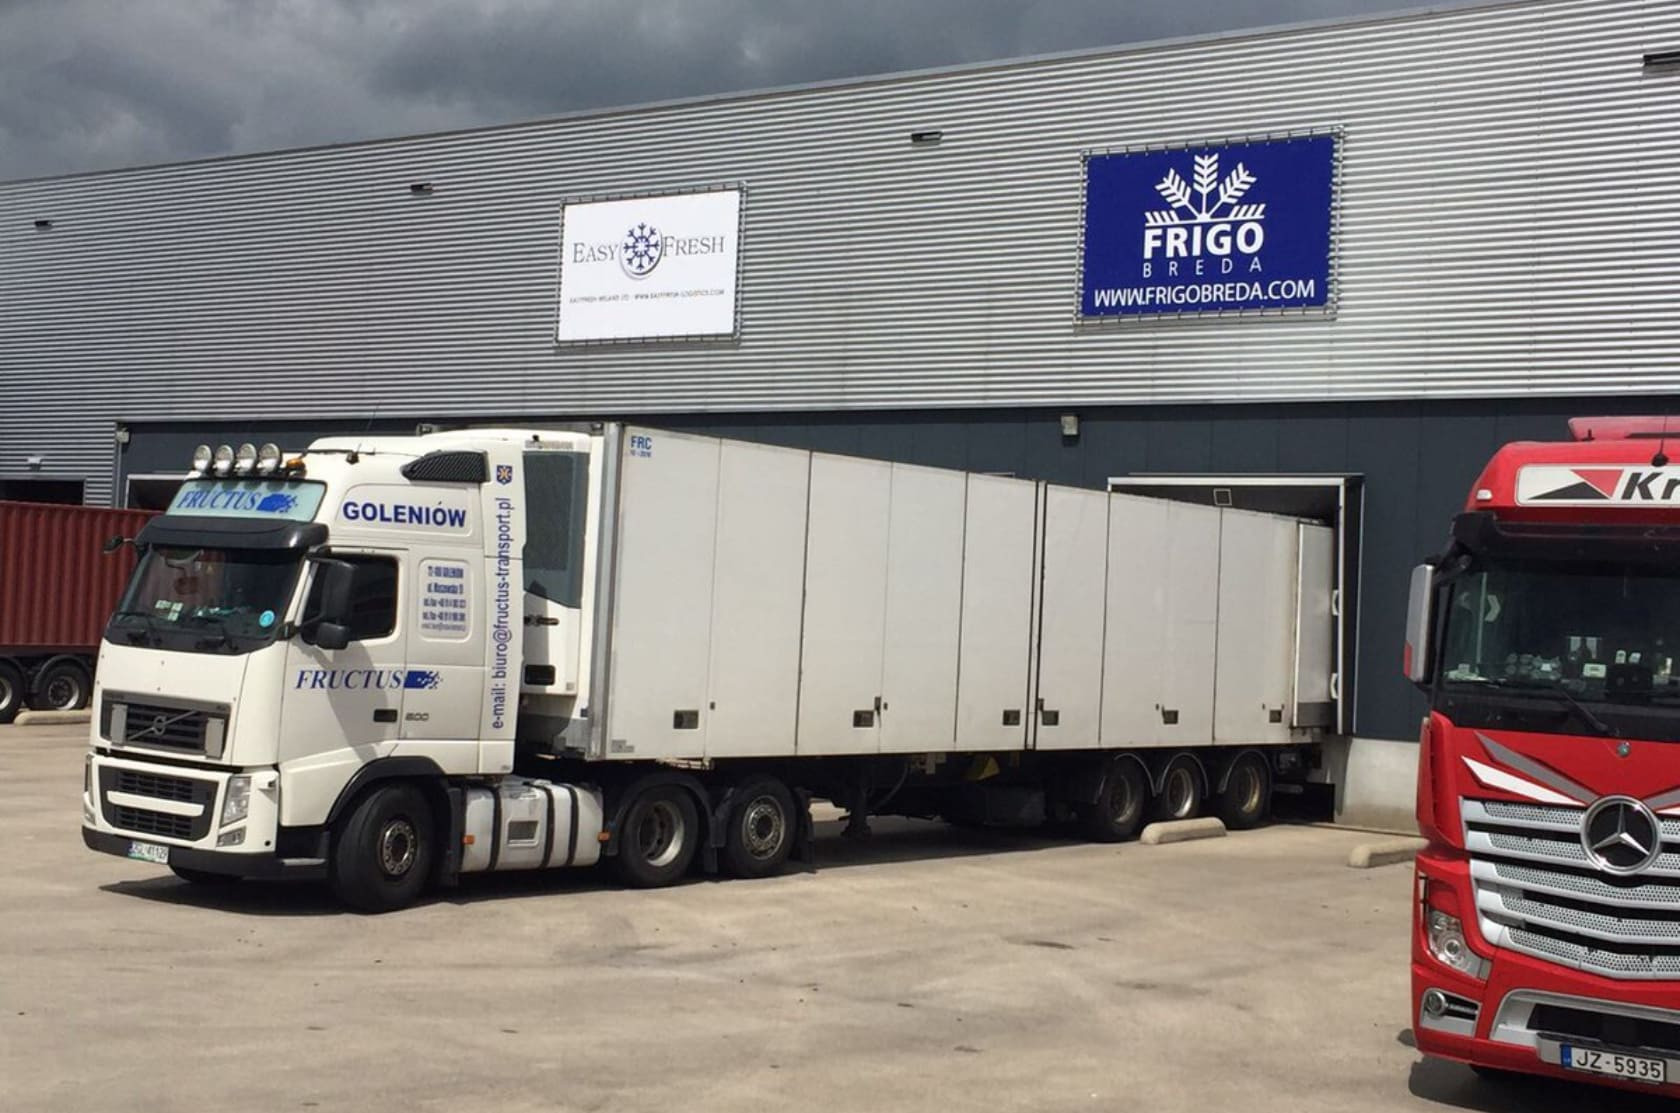 Gevelreiniging Warehouse Frigo Breda